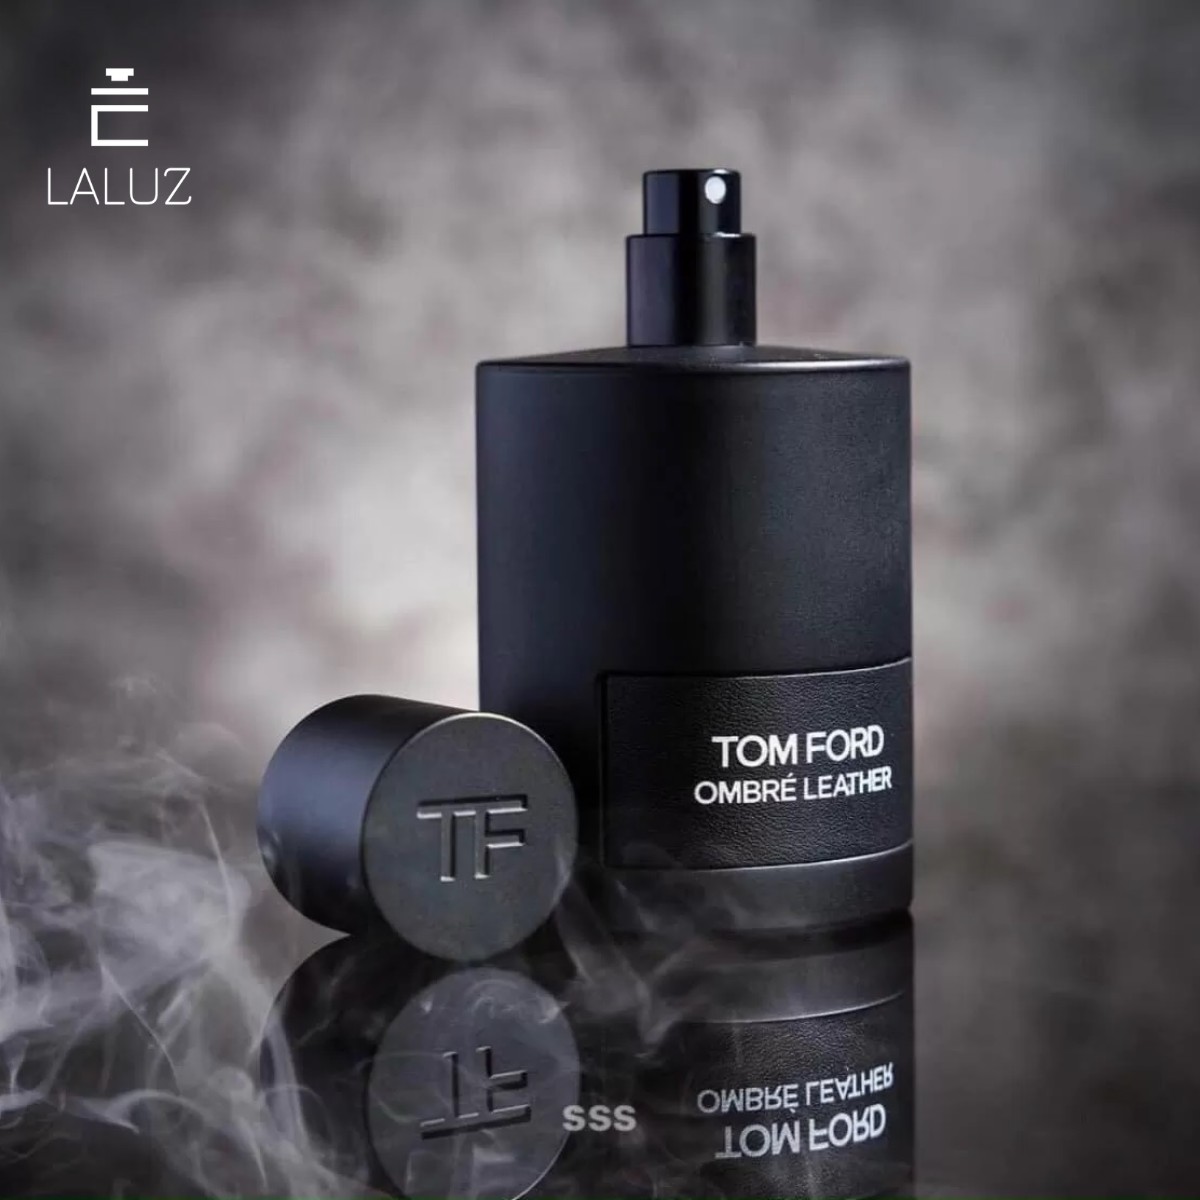 Mùi hương cuốn hút của nước hoa Tom Ford Ombre Leather rất thích hợp với người trưởng thành trên 25 tuổi